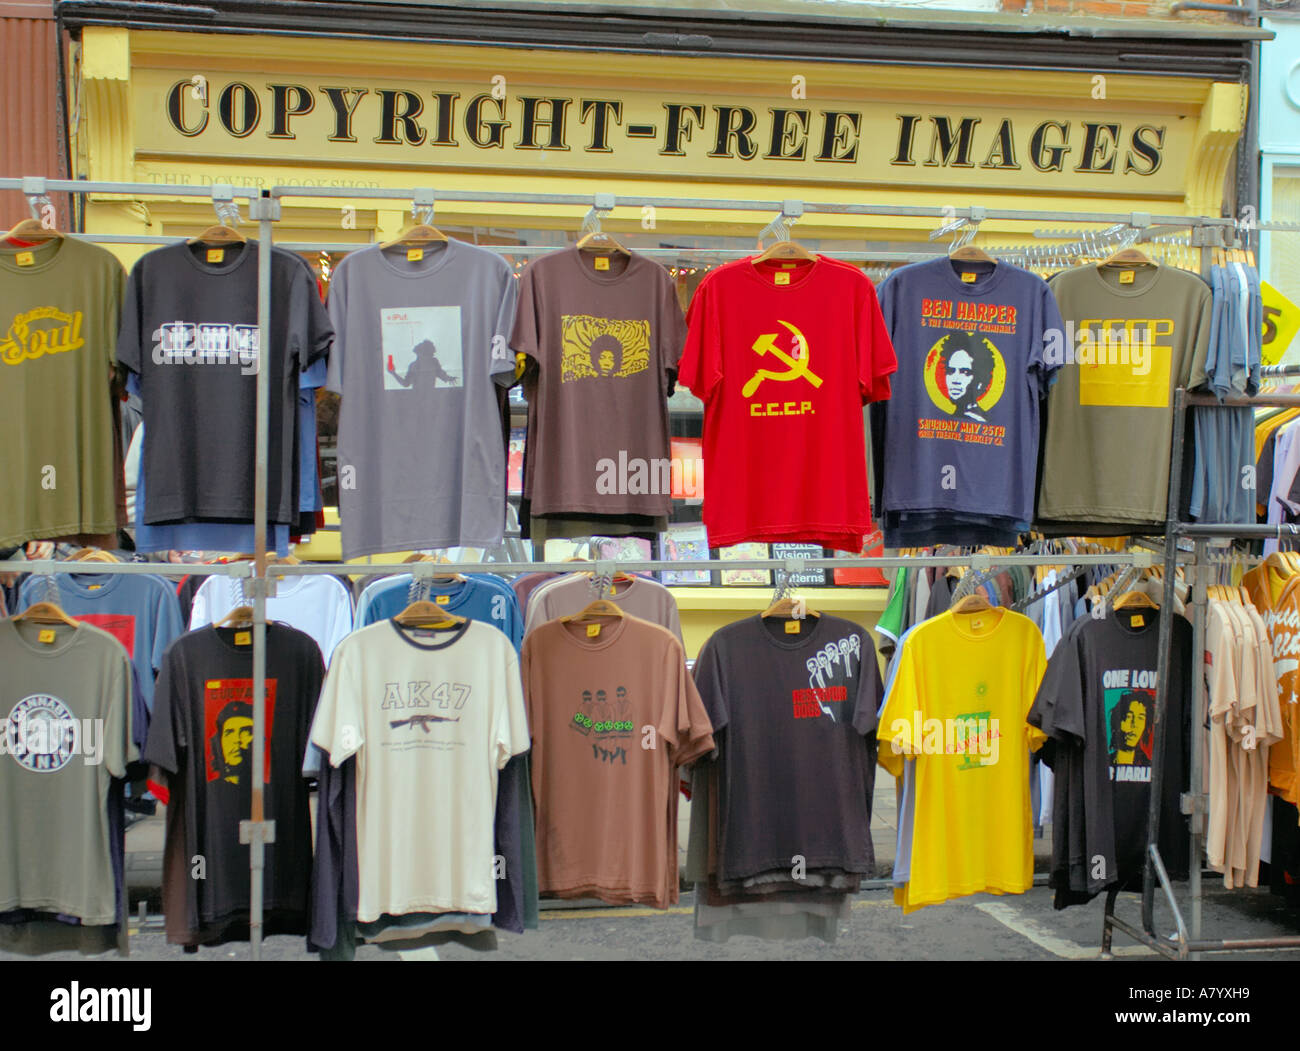 t Shirts an einem Marktstand in Covent Garden in London vor einem Geschäft  mit Schild copyright free Bilder Stockfotografie - Alamy